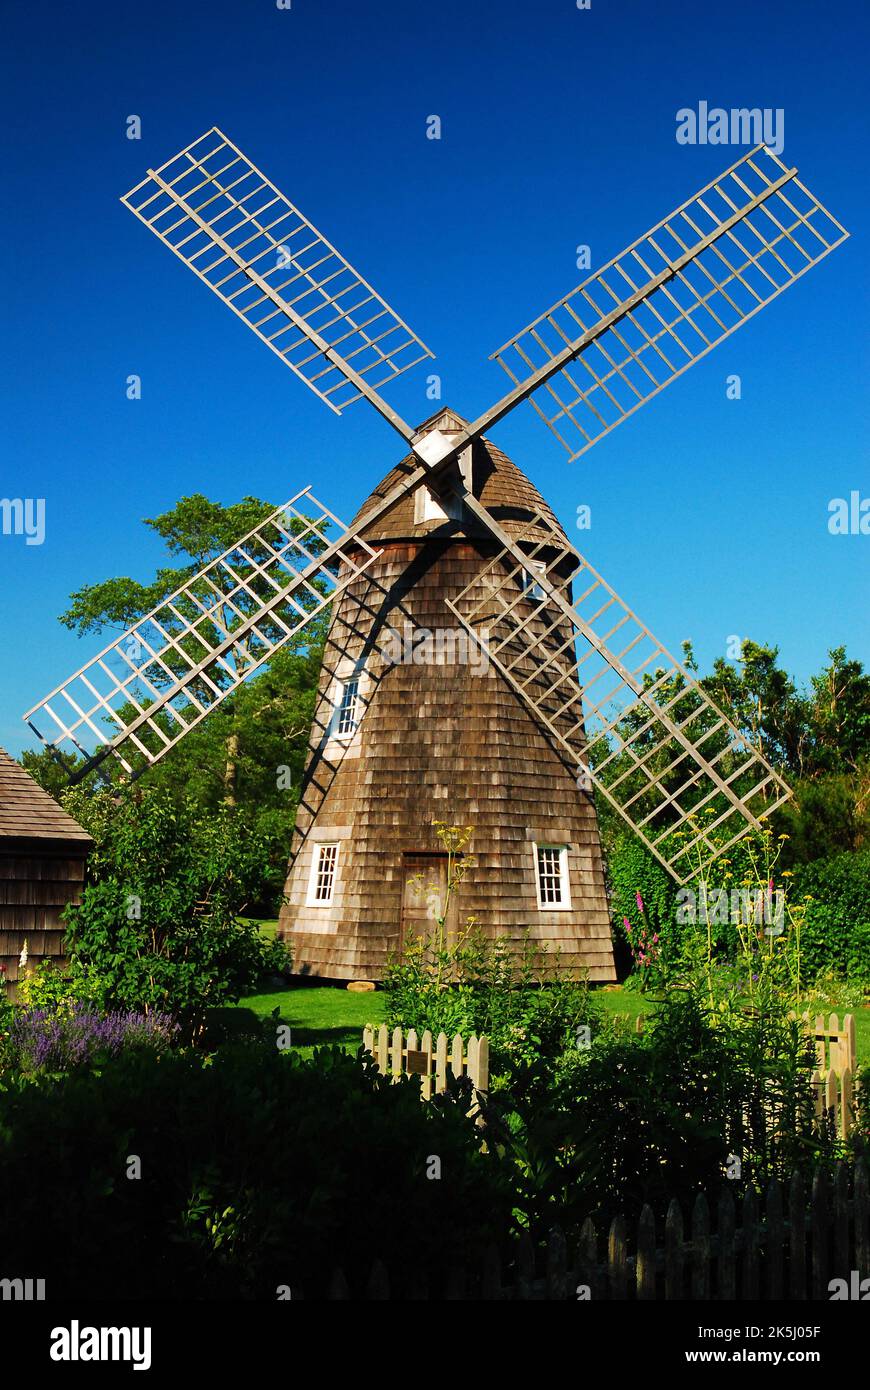 Un moulin à vent historique en bois se trouve au centre d'un jardin d'été fleuri dans un musée dédié à la vie rurale coloniale Banque D'Images